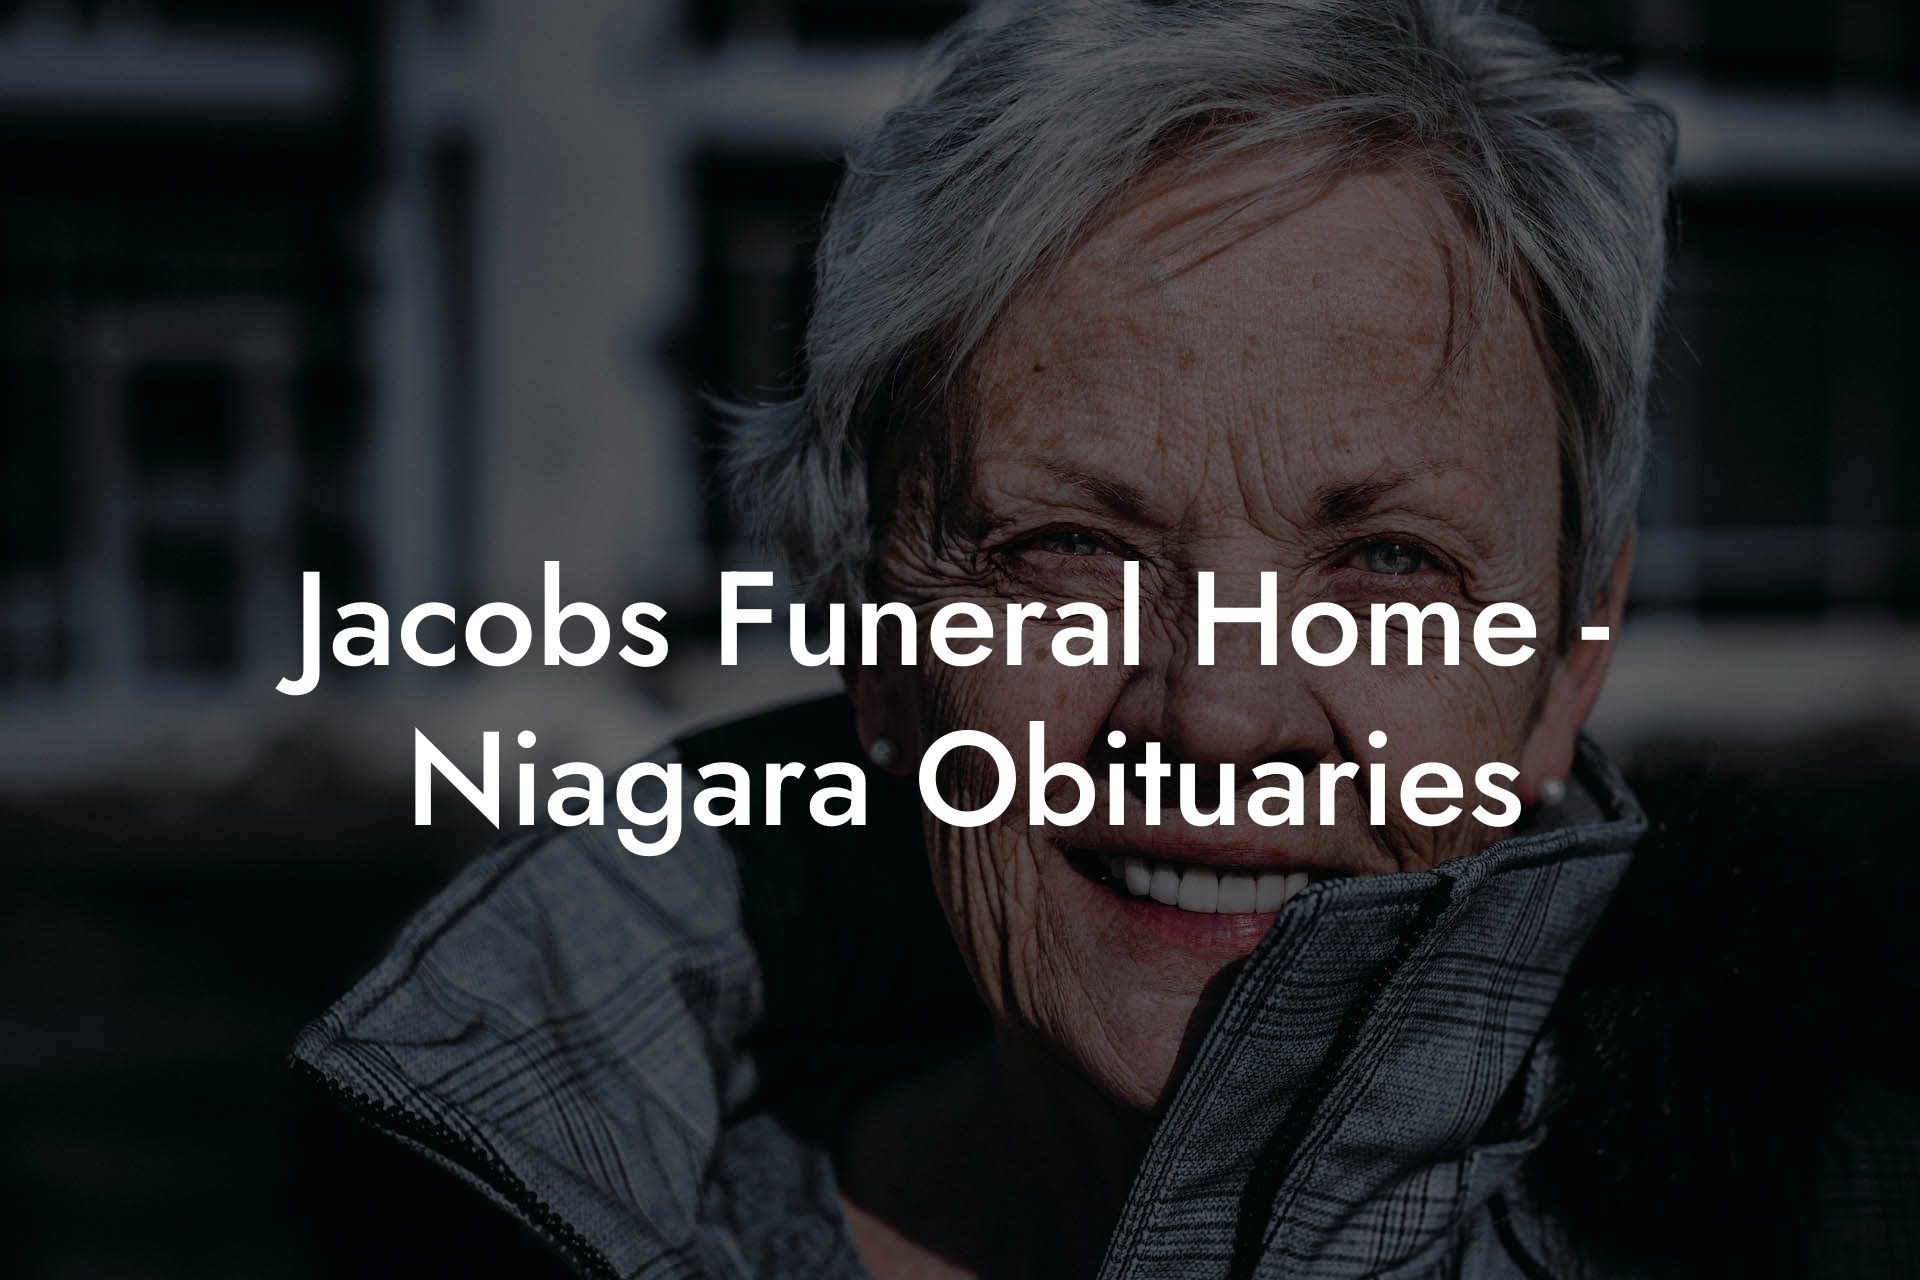 Jacobs Funeral Home - Niagara Obituaries